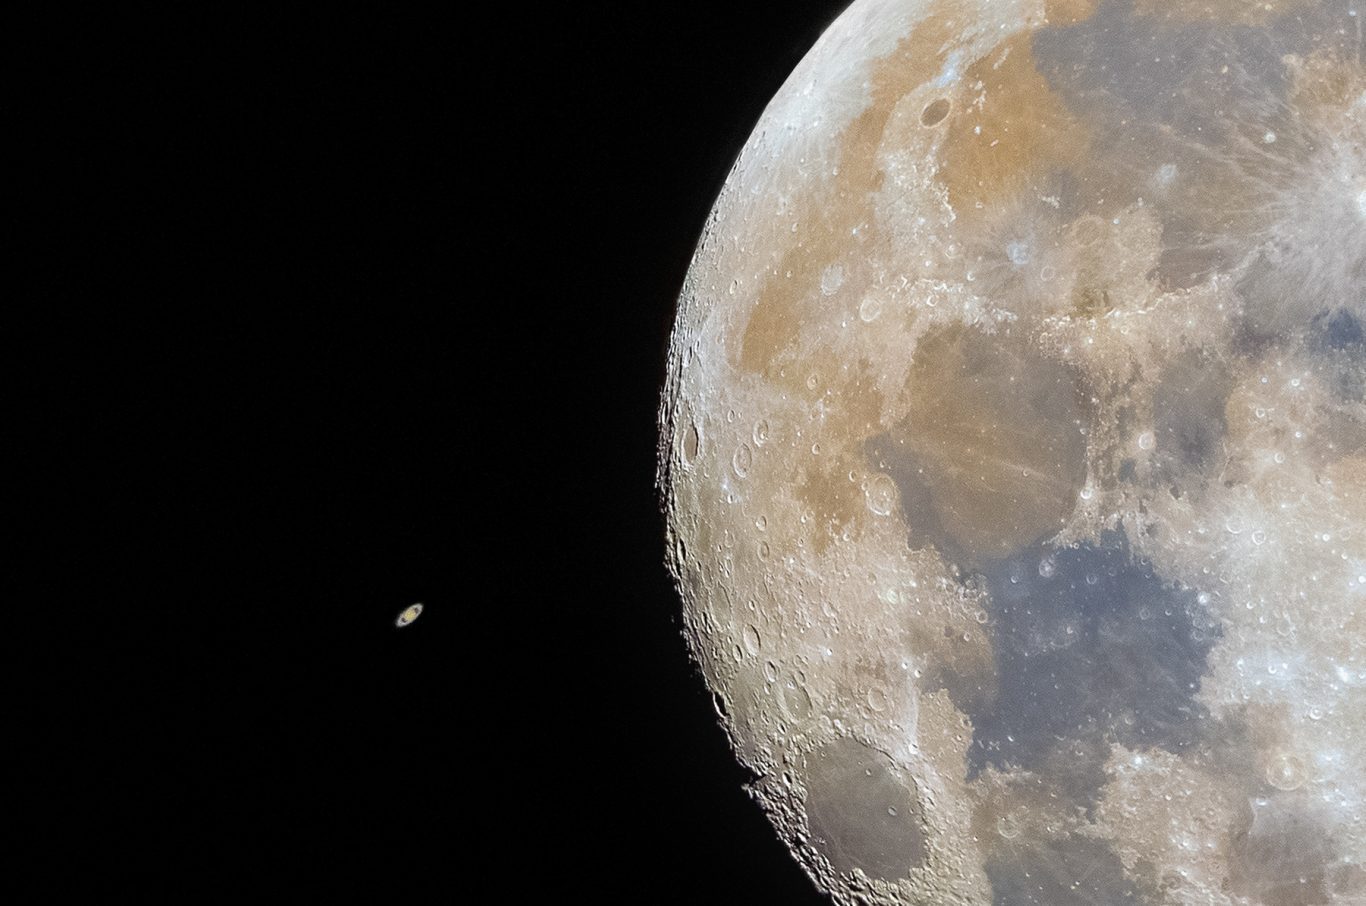 La Luna y Saturno. Esta particular imagen muestra a Saturno emergiendo por detrás de la Luna, minutos después de haber sido ocultado. Las ocultaciones son fenómenos locales en donde la Luna pasa por delante de objetos ocultándonos de nuestra vista durante algunos minutos. Foto: Franco Meconi.